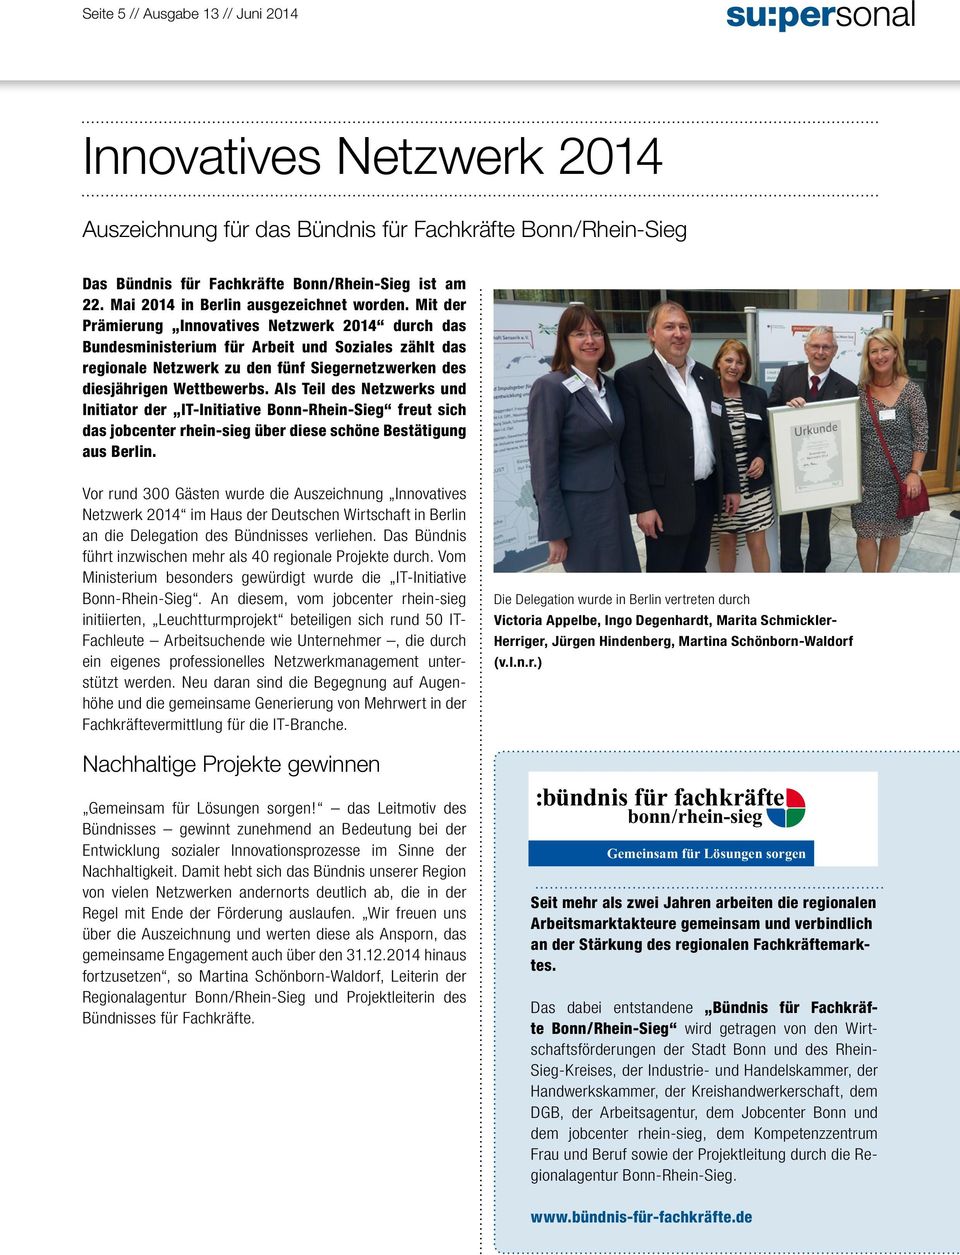 Mit der Prämierung Innovatives Netzwerk 2014 durch das Bundesministerium für Arbeit und Soziales zählt das regionale Netzwerk zu den fünf Siegernetzwerken des diesjährigen Wettbewerbs.